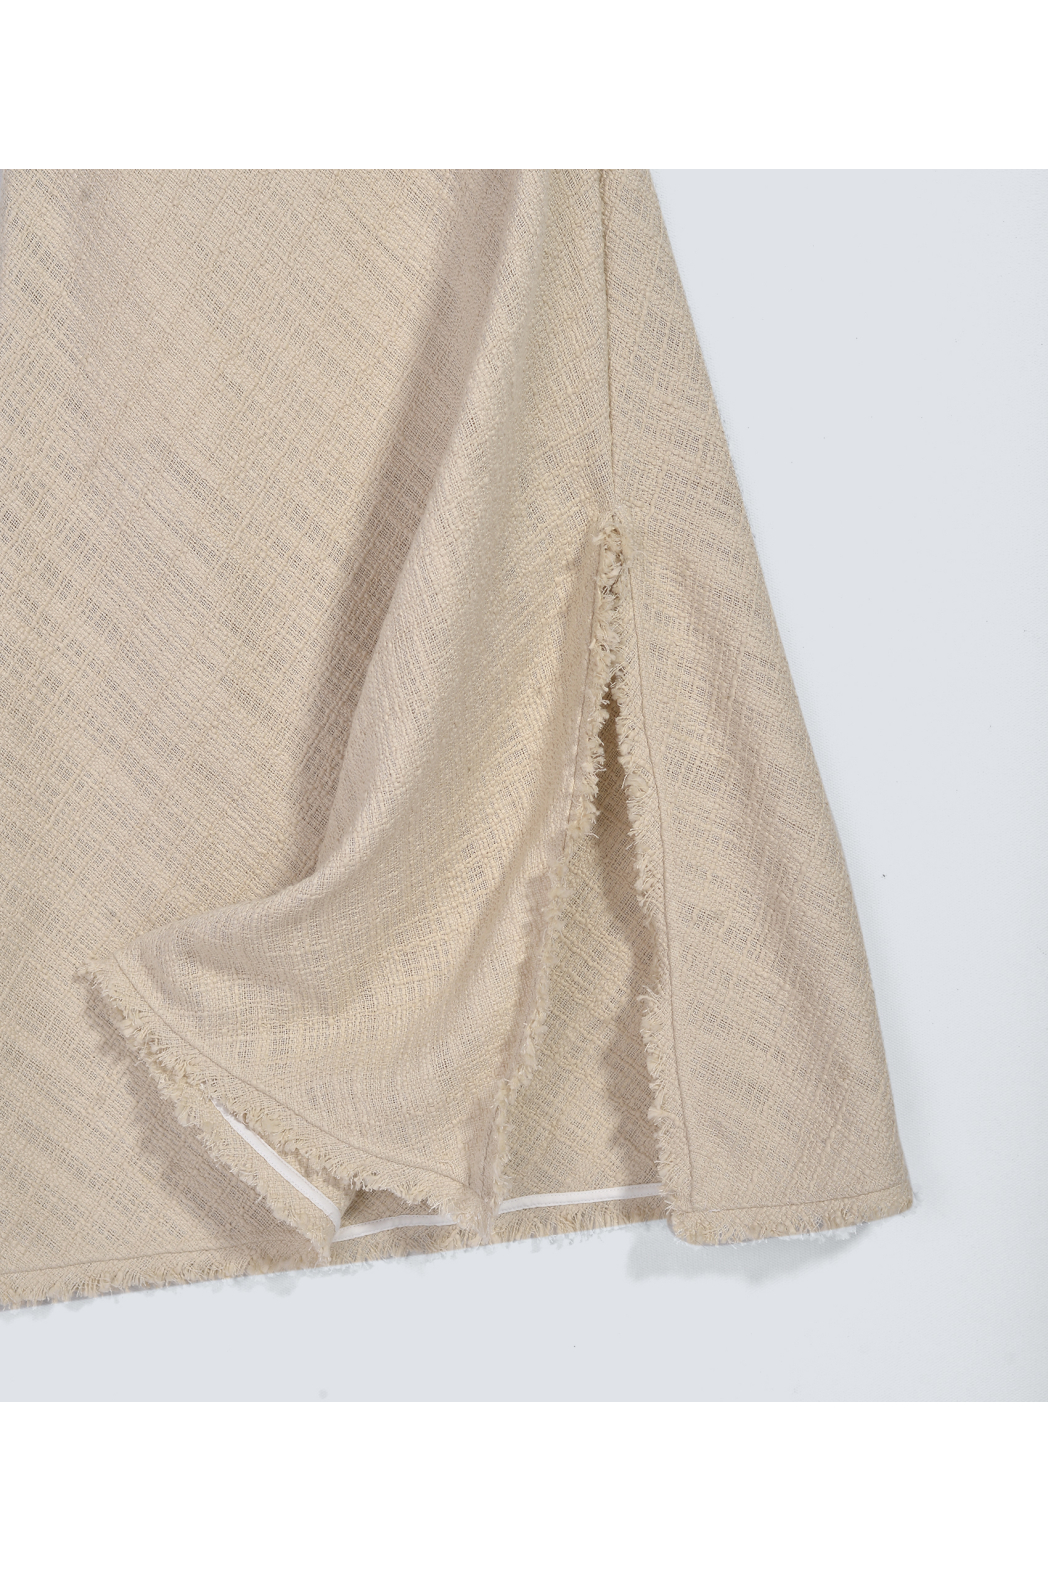 Đầm 2 dây, vải tweed. Cotton/poly - 10F20DREW014